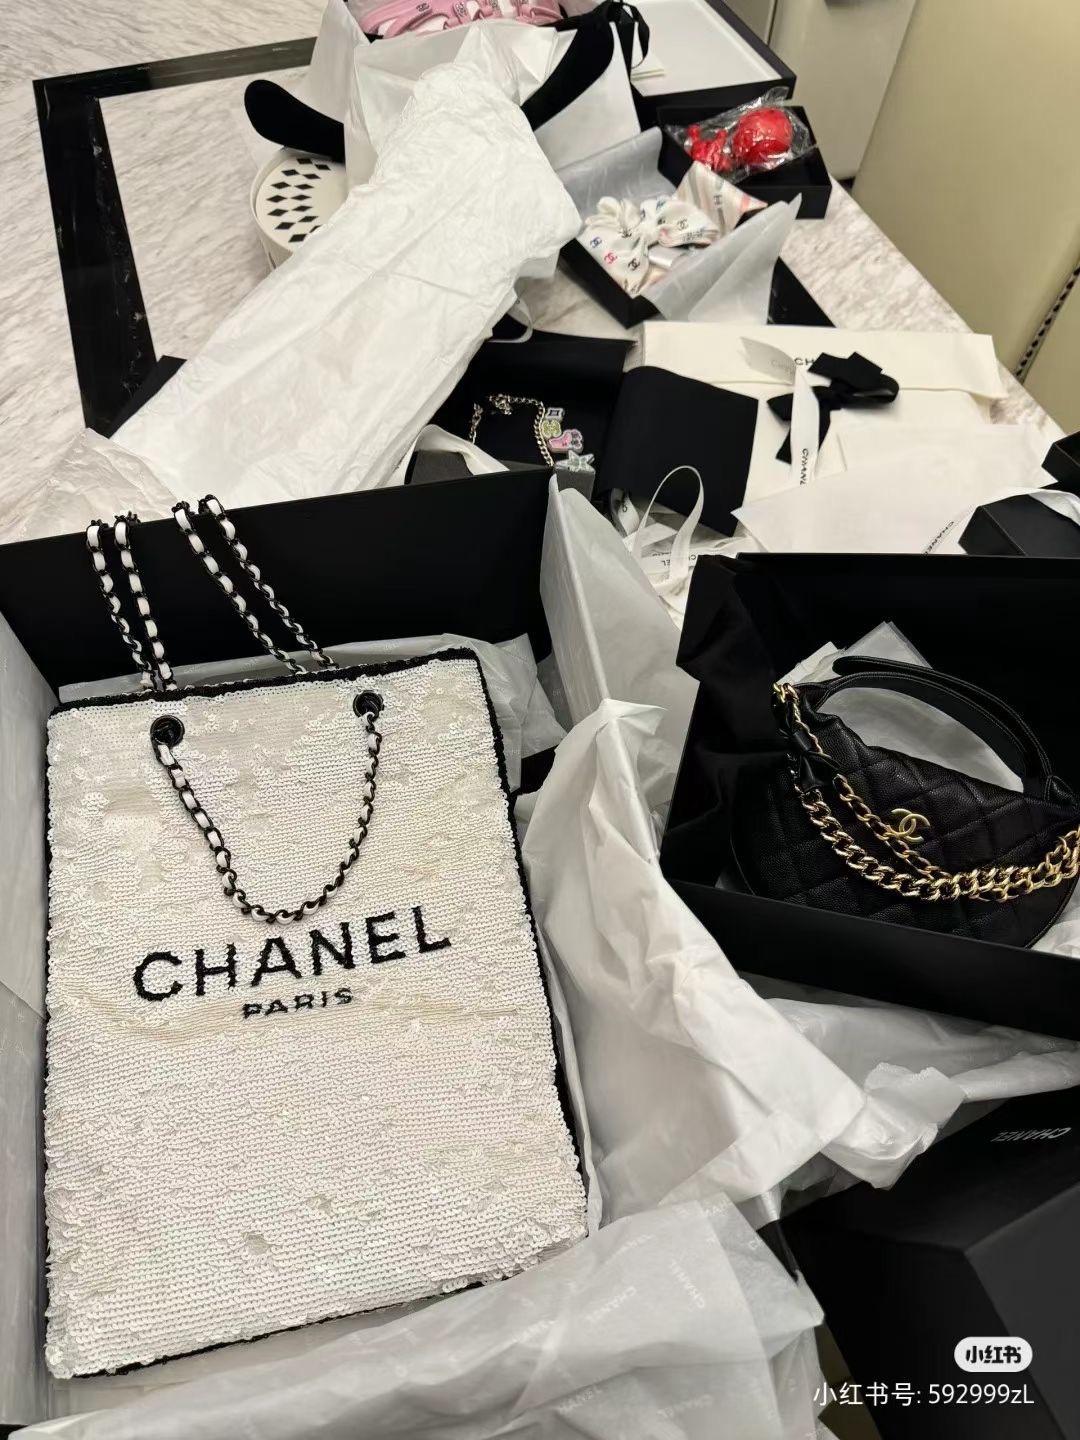 Chanel Handbags Tote Bags White